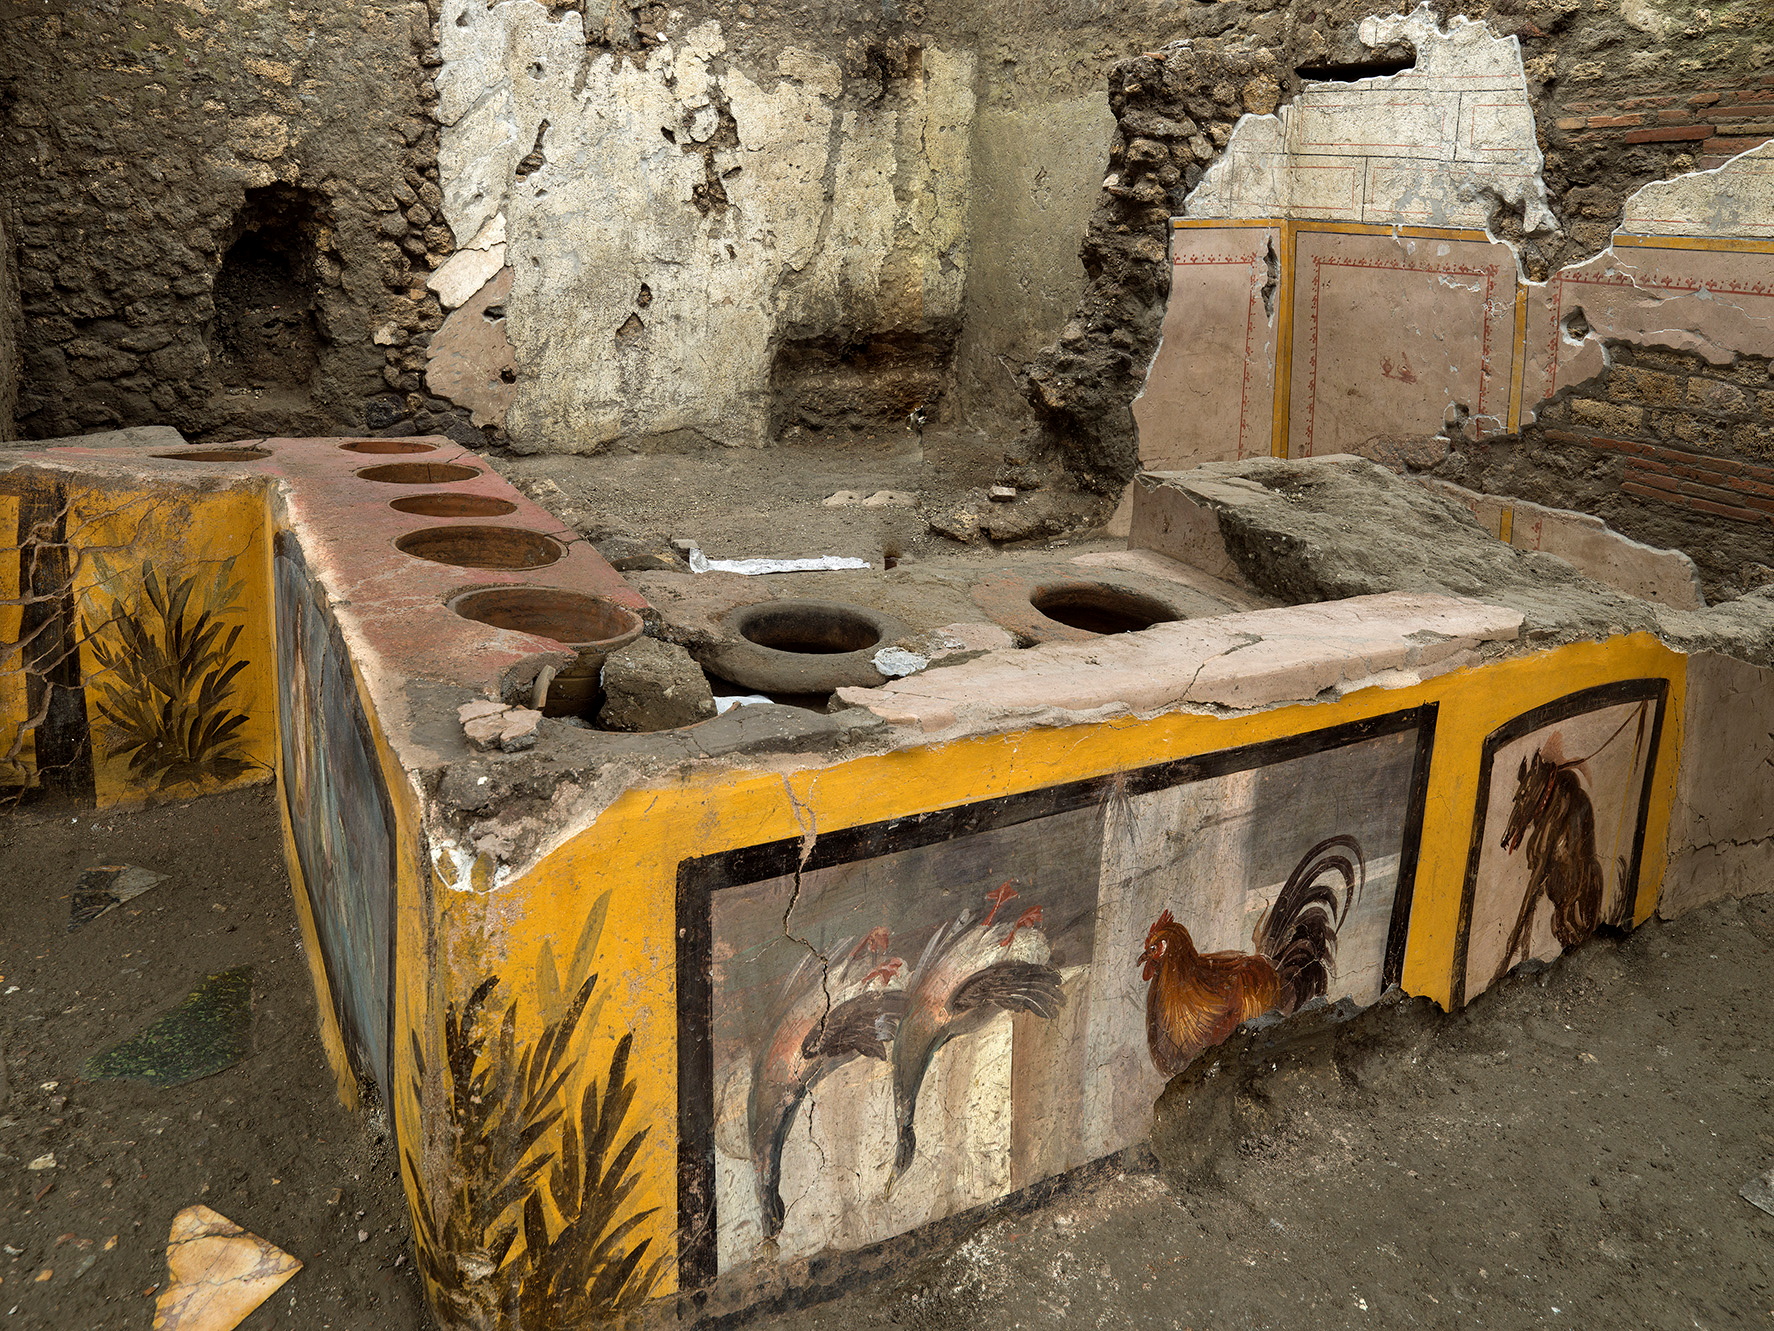 Arqueólogos descubren antigua tienda de comida callejera en Pompeya